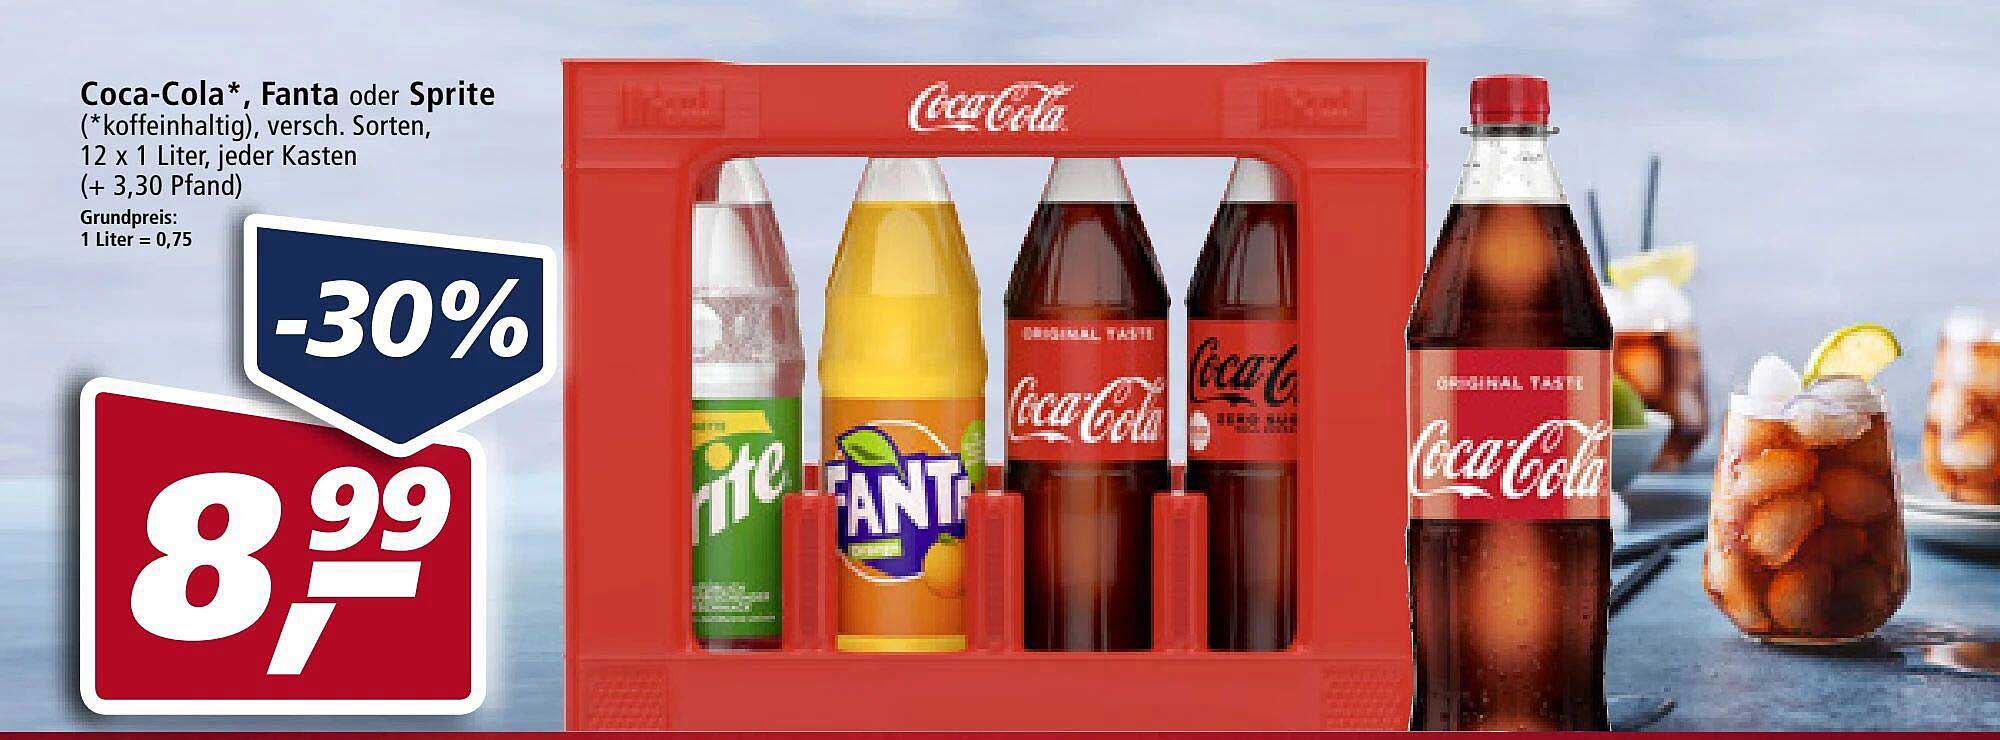 Real Coca-cola, Fanta, Sprite